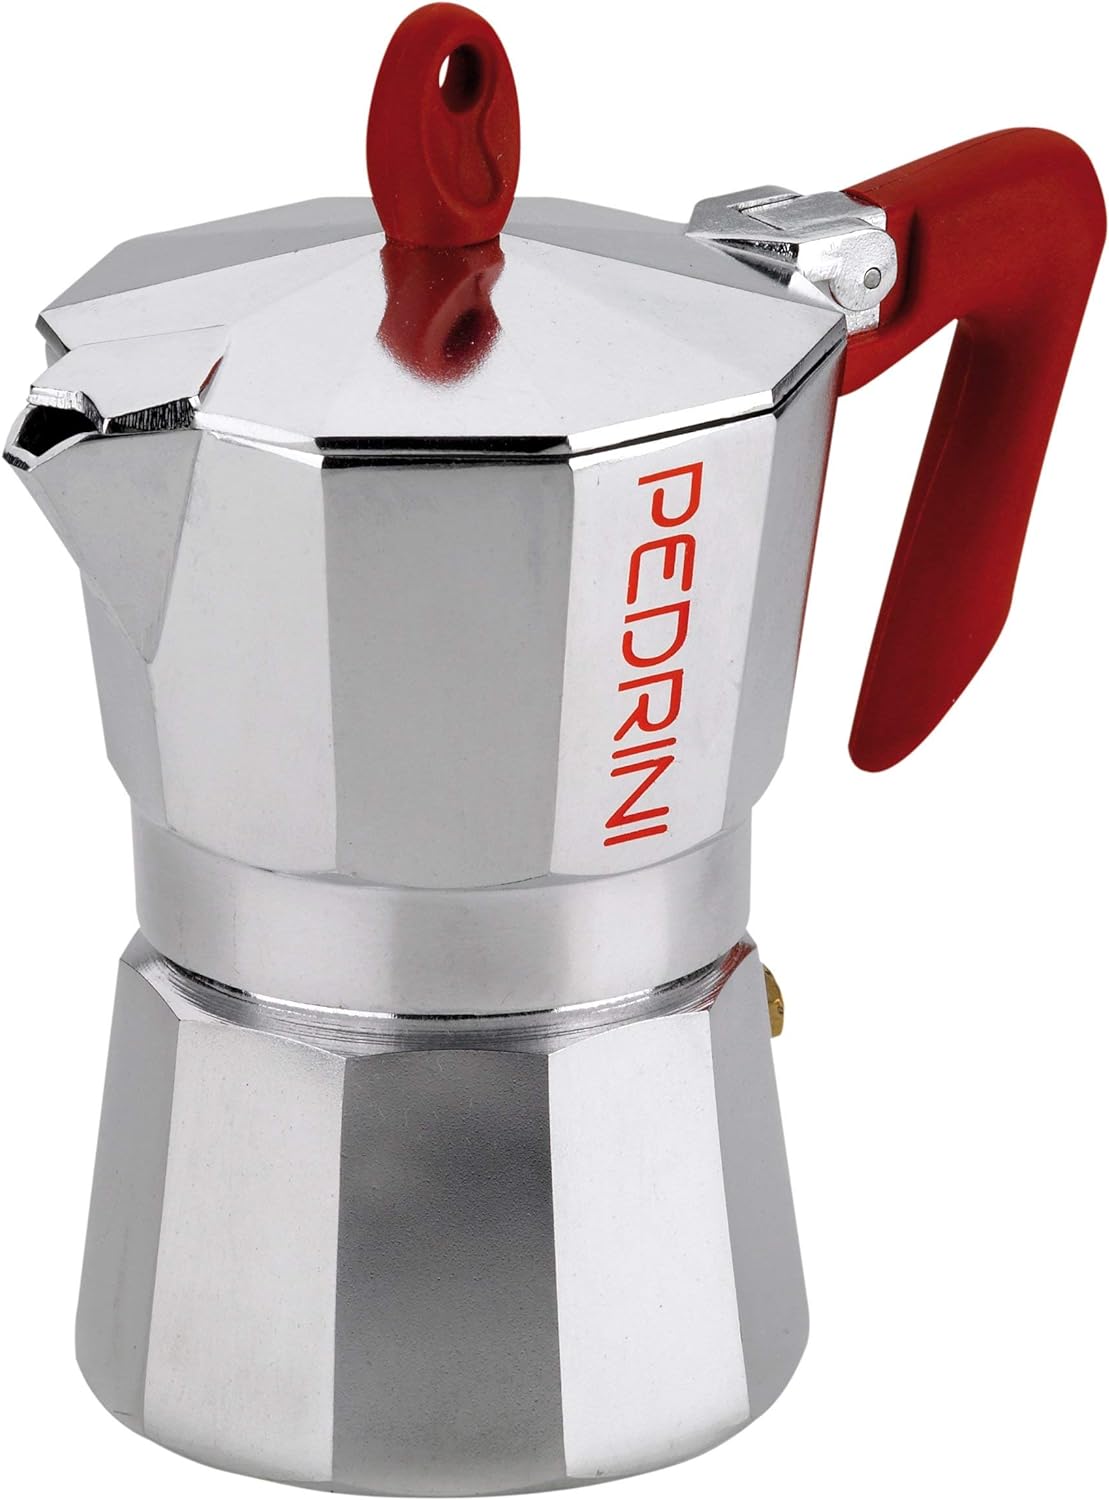 Pedrini Kaffettiera 9081 Espresso Maker 3 Cups Red